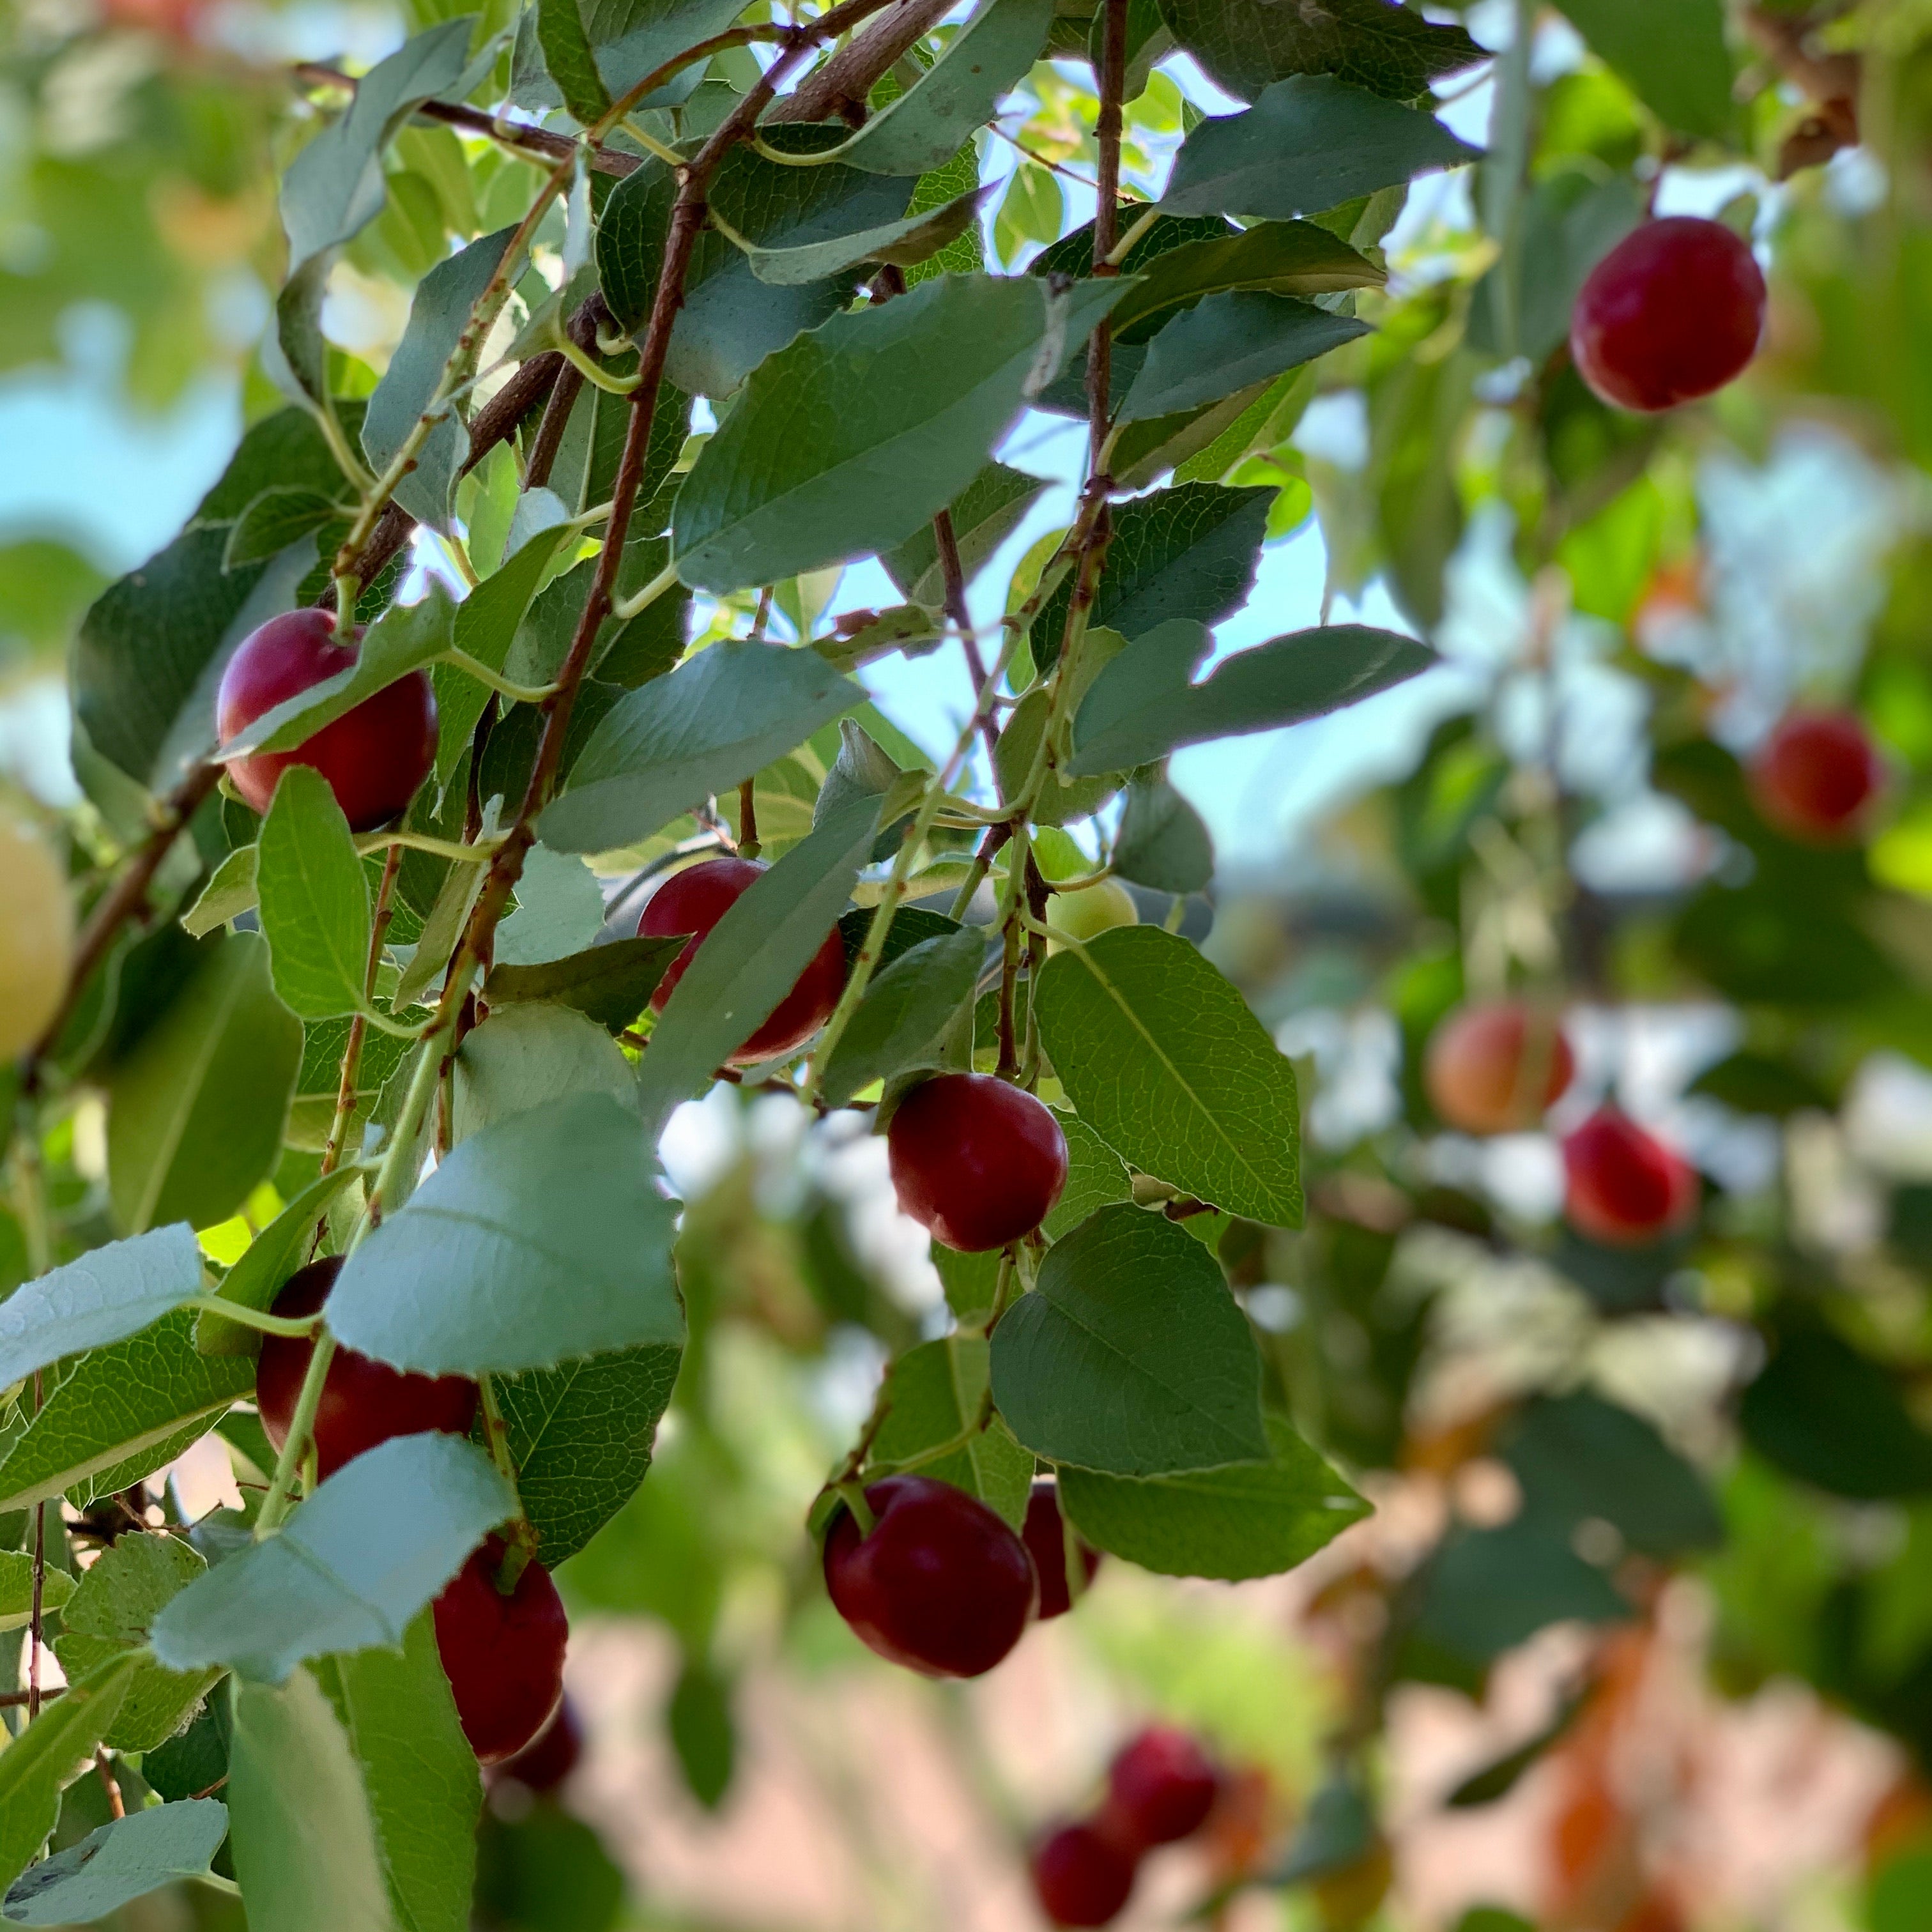 Holly Leaf Cherry, 'Prunus ilicifolia'